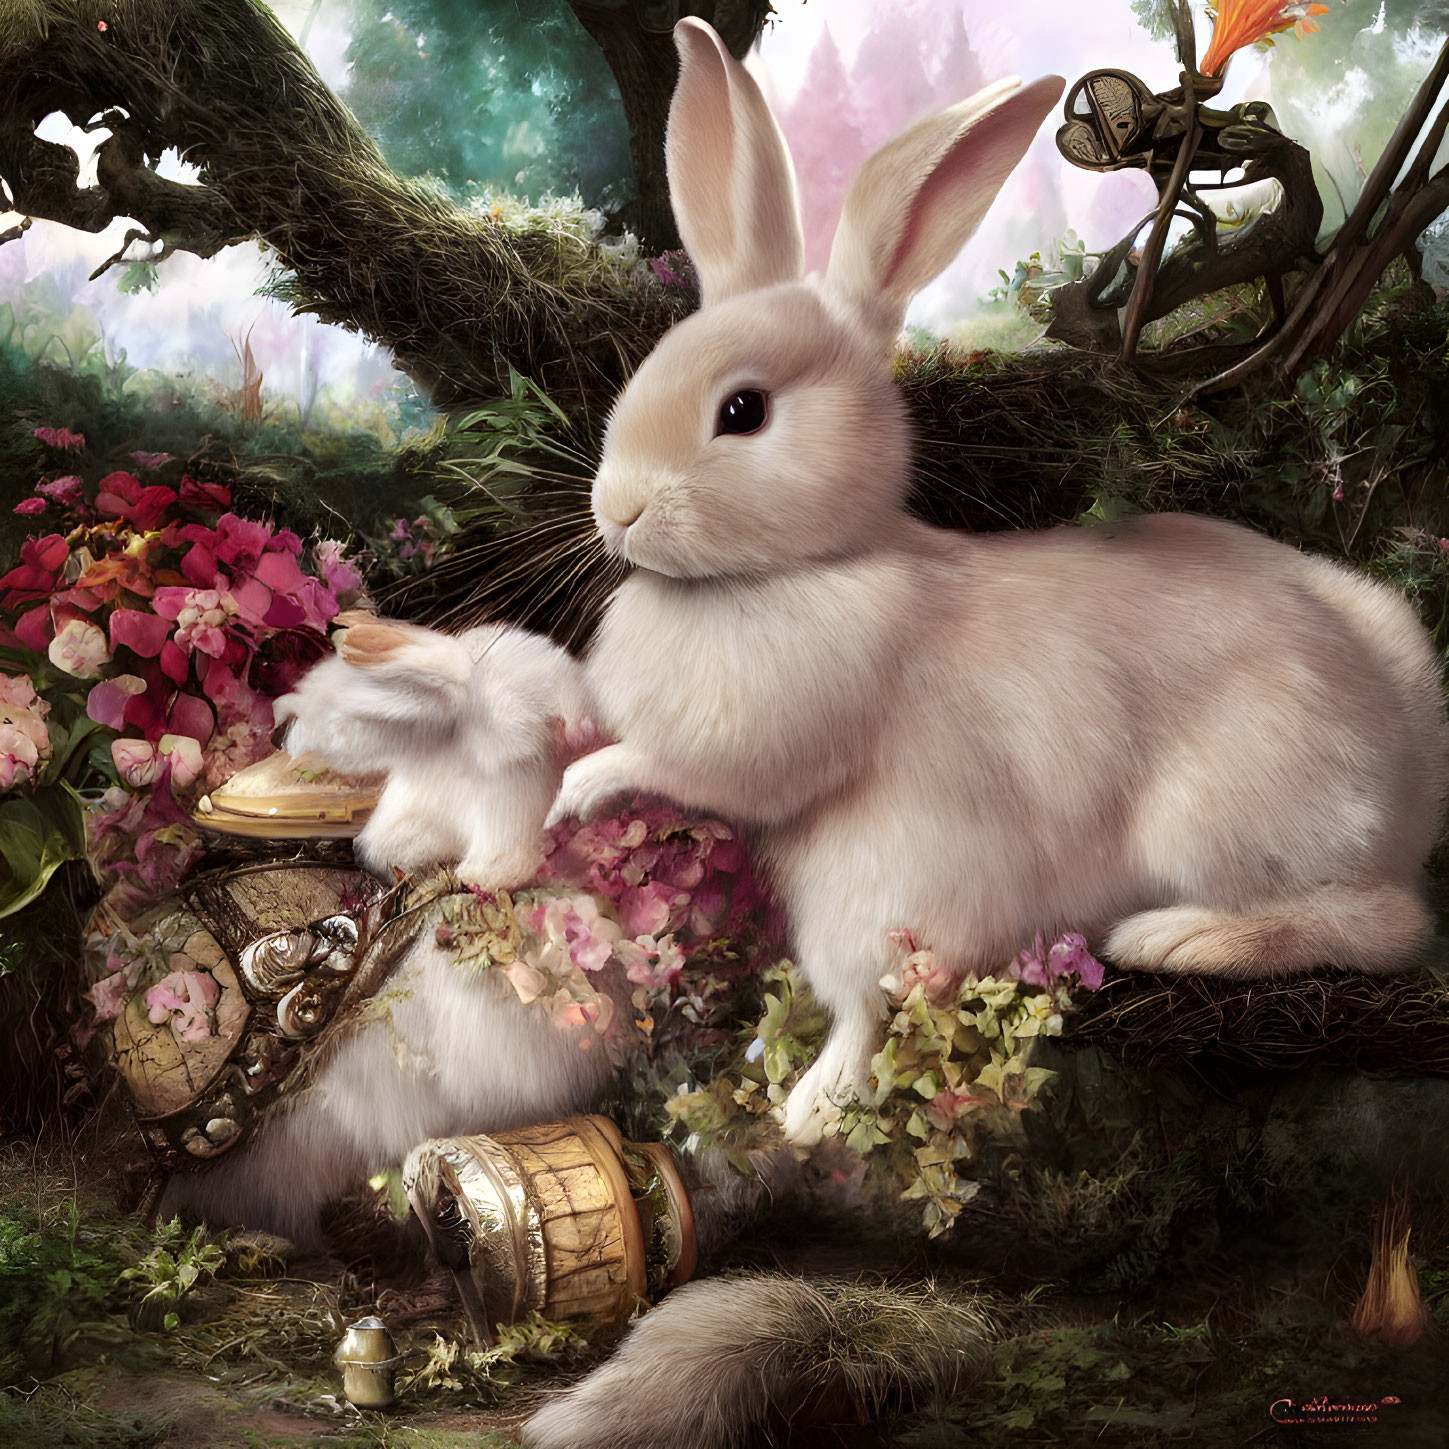 Detailed illustration of rabbits in vibrant flower garden